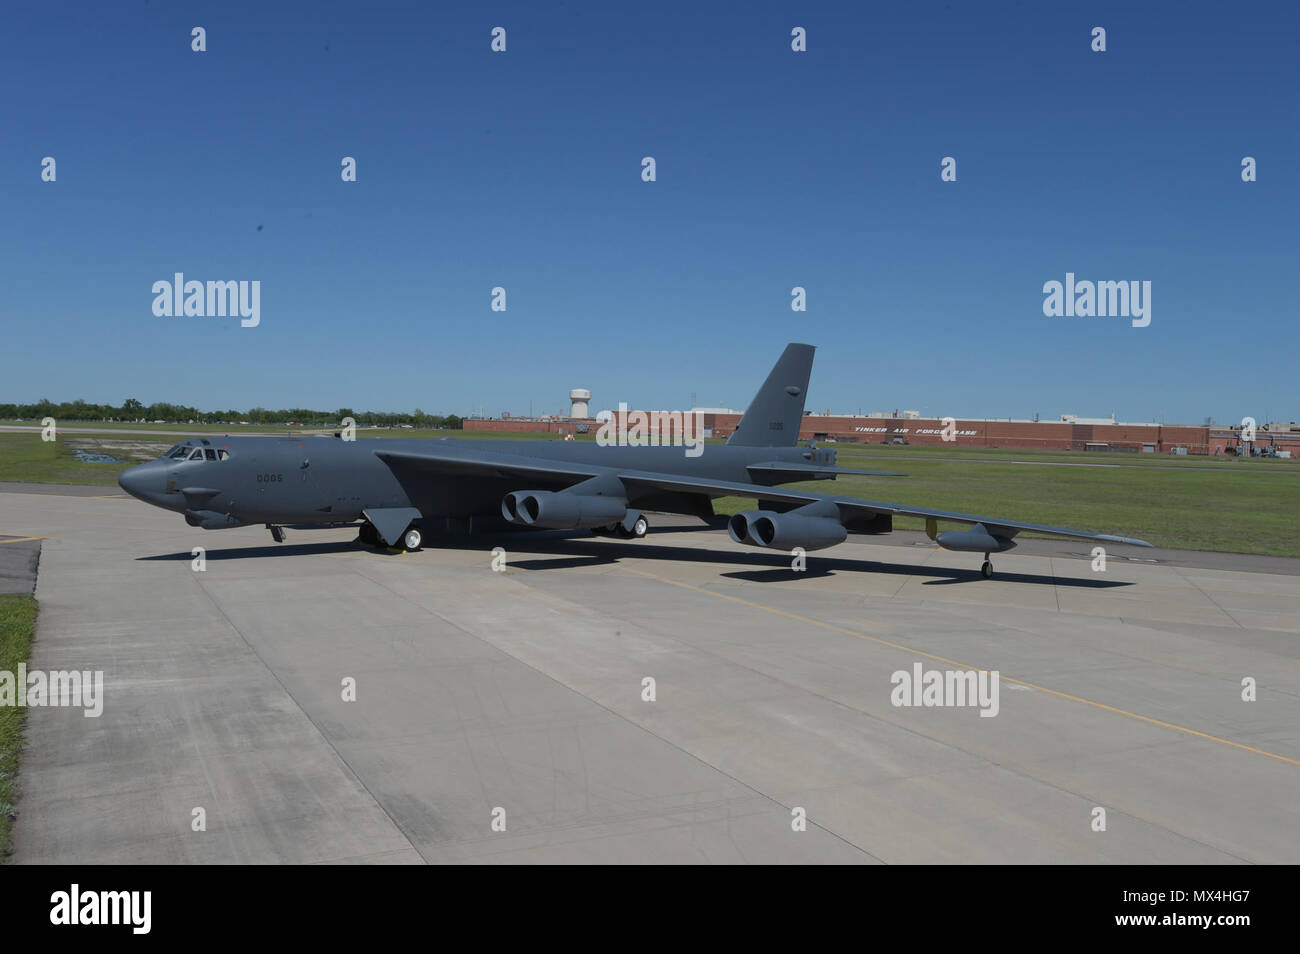 Boeing B-52H, 60-0005, pose en face de l'Oklahoma City Air complexe logistique Bldg. 3001 à la suite de révision le 1er mai 2017, Tinker Air Force Base, Texas. OC-ALC est responsable de l'entretien au niveau du dépôt de la flotte de B-52, dont une grande partie des travaux en cours dans le bâtiment indiqué derrière. Banque D'Images